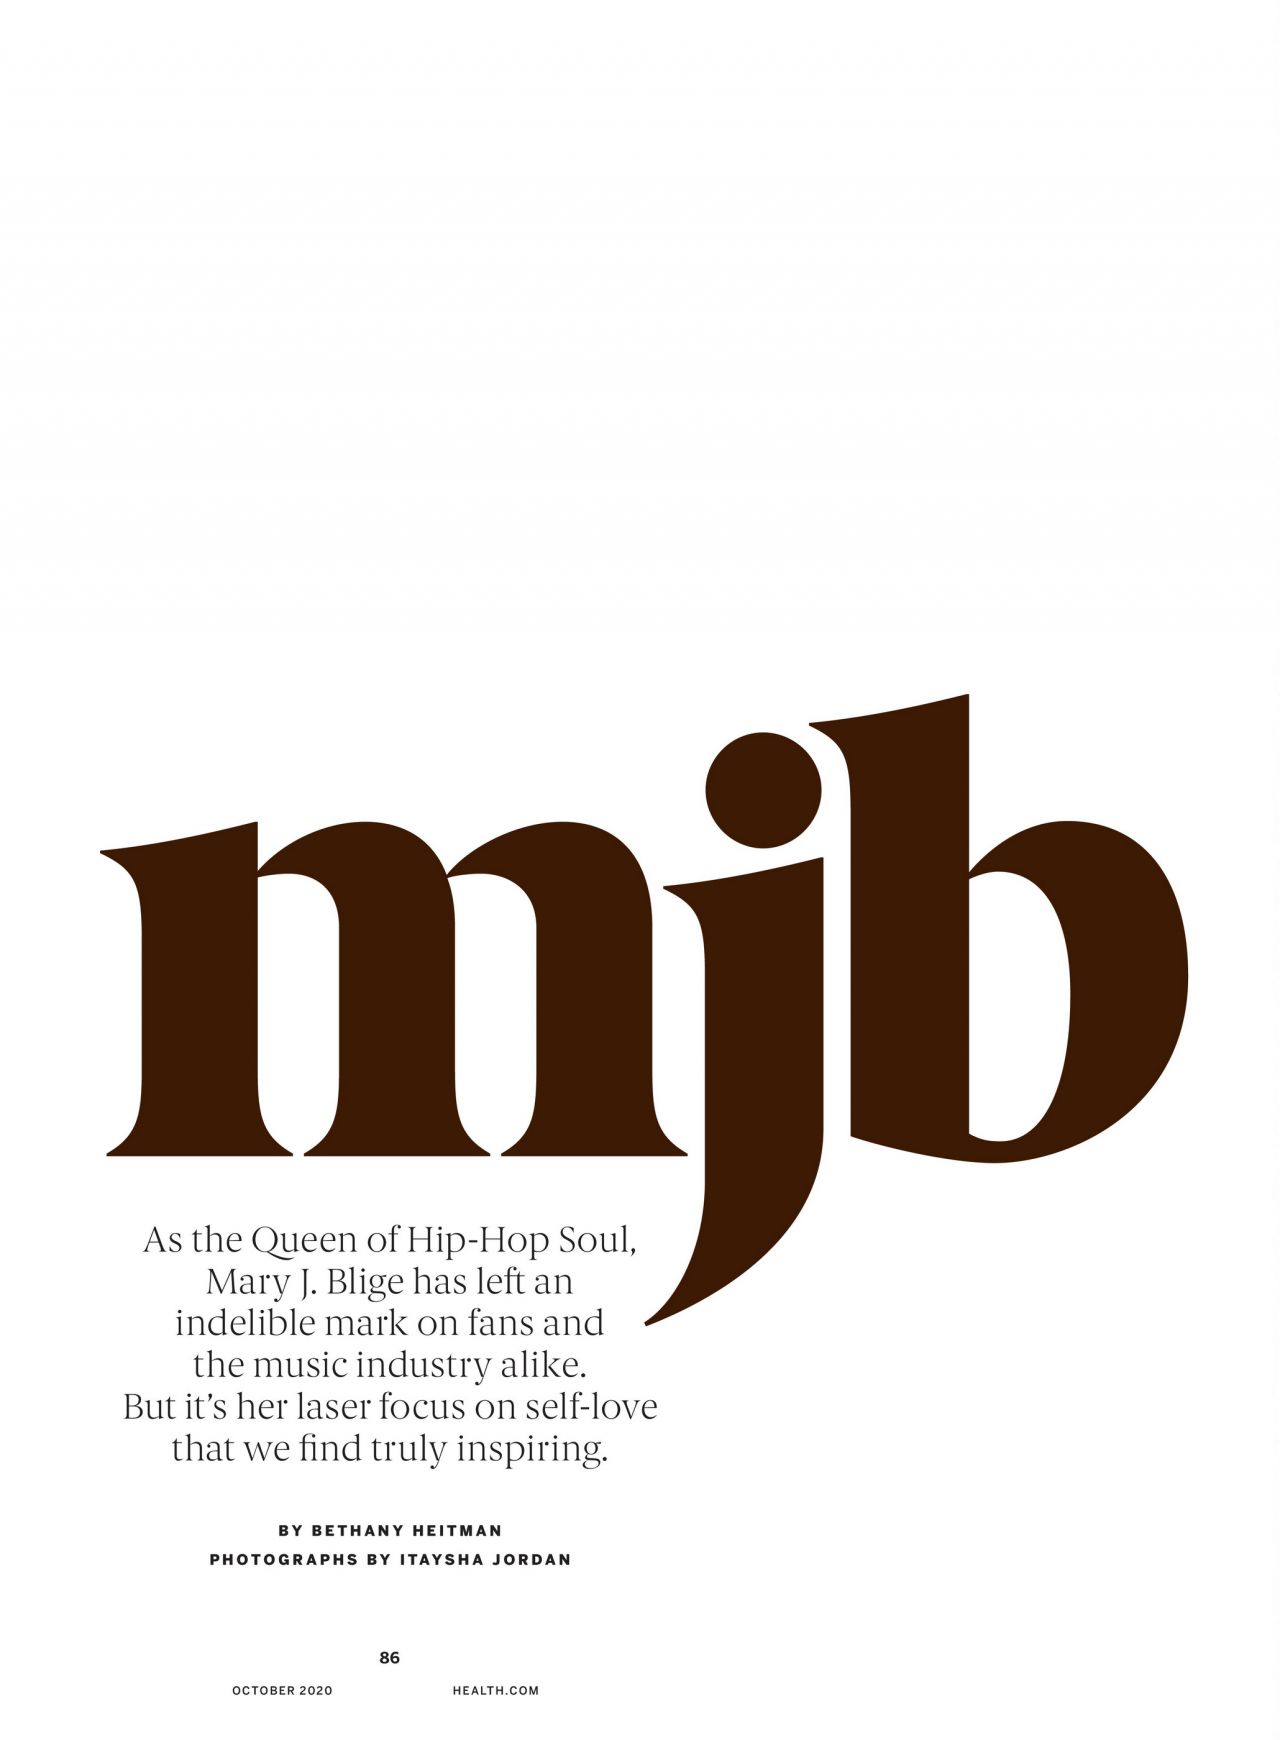 mary-j.-blige-health-magazine-october-2020-issue-1.jpg